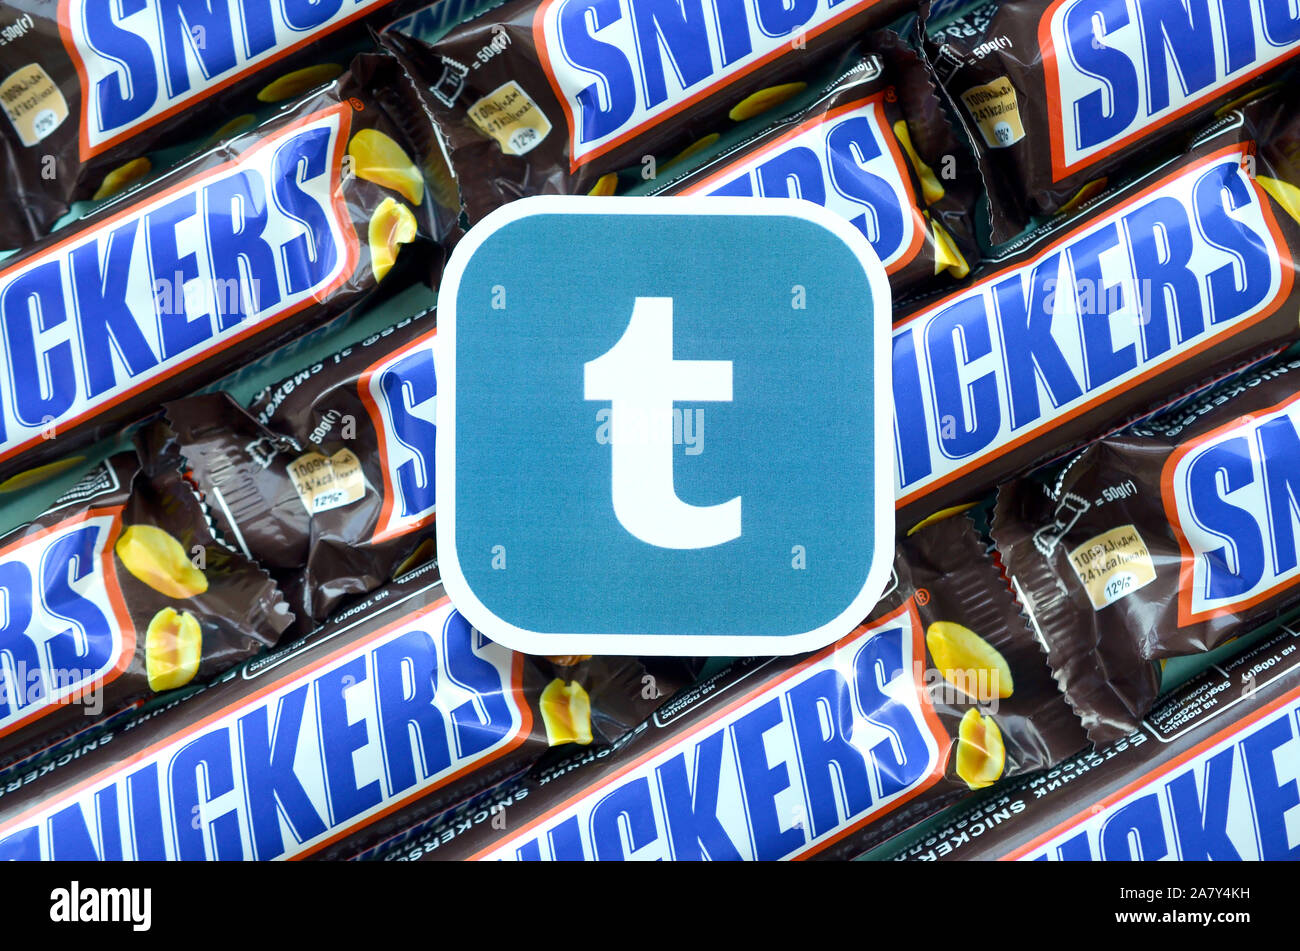 KHARKOV, Ucrania - Octubre 2, 2019: el papel de Tumblr logotipo en muchos bares de obleas cubiertas de chocolate Snickers en embalaje marrón. La publicidad de productos de chocolate i Foto de stock